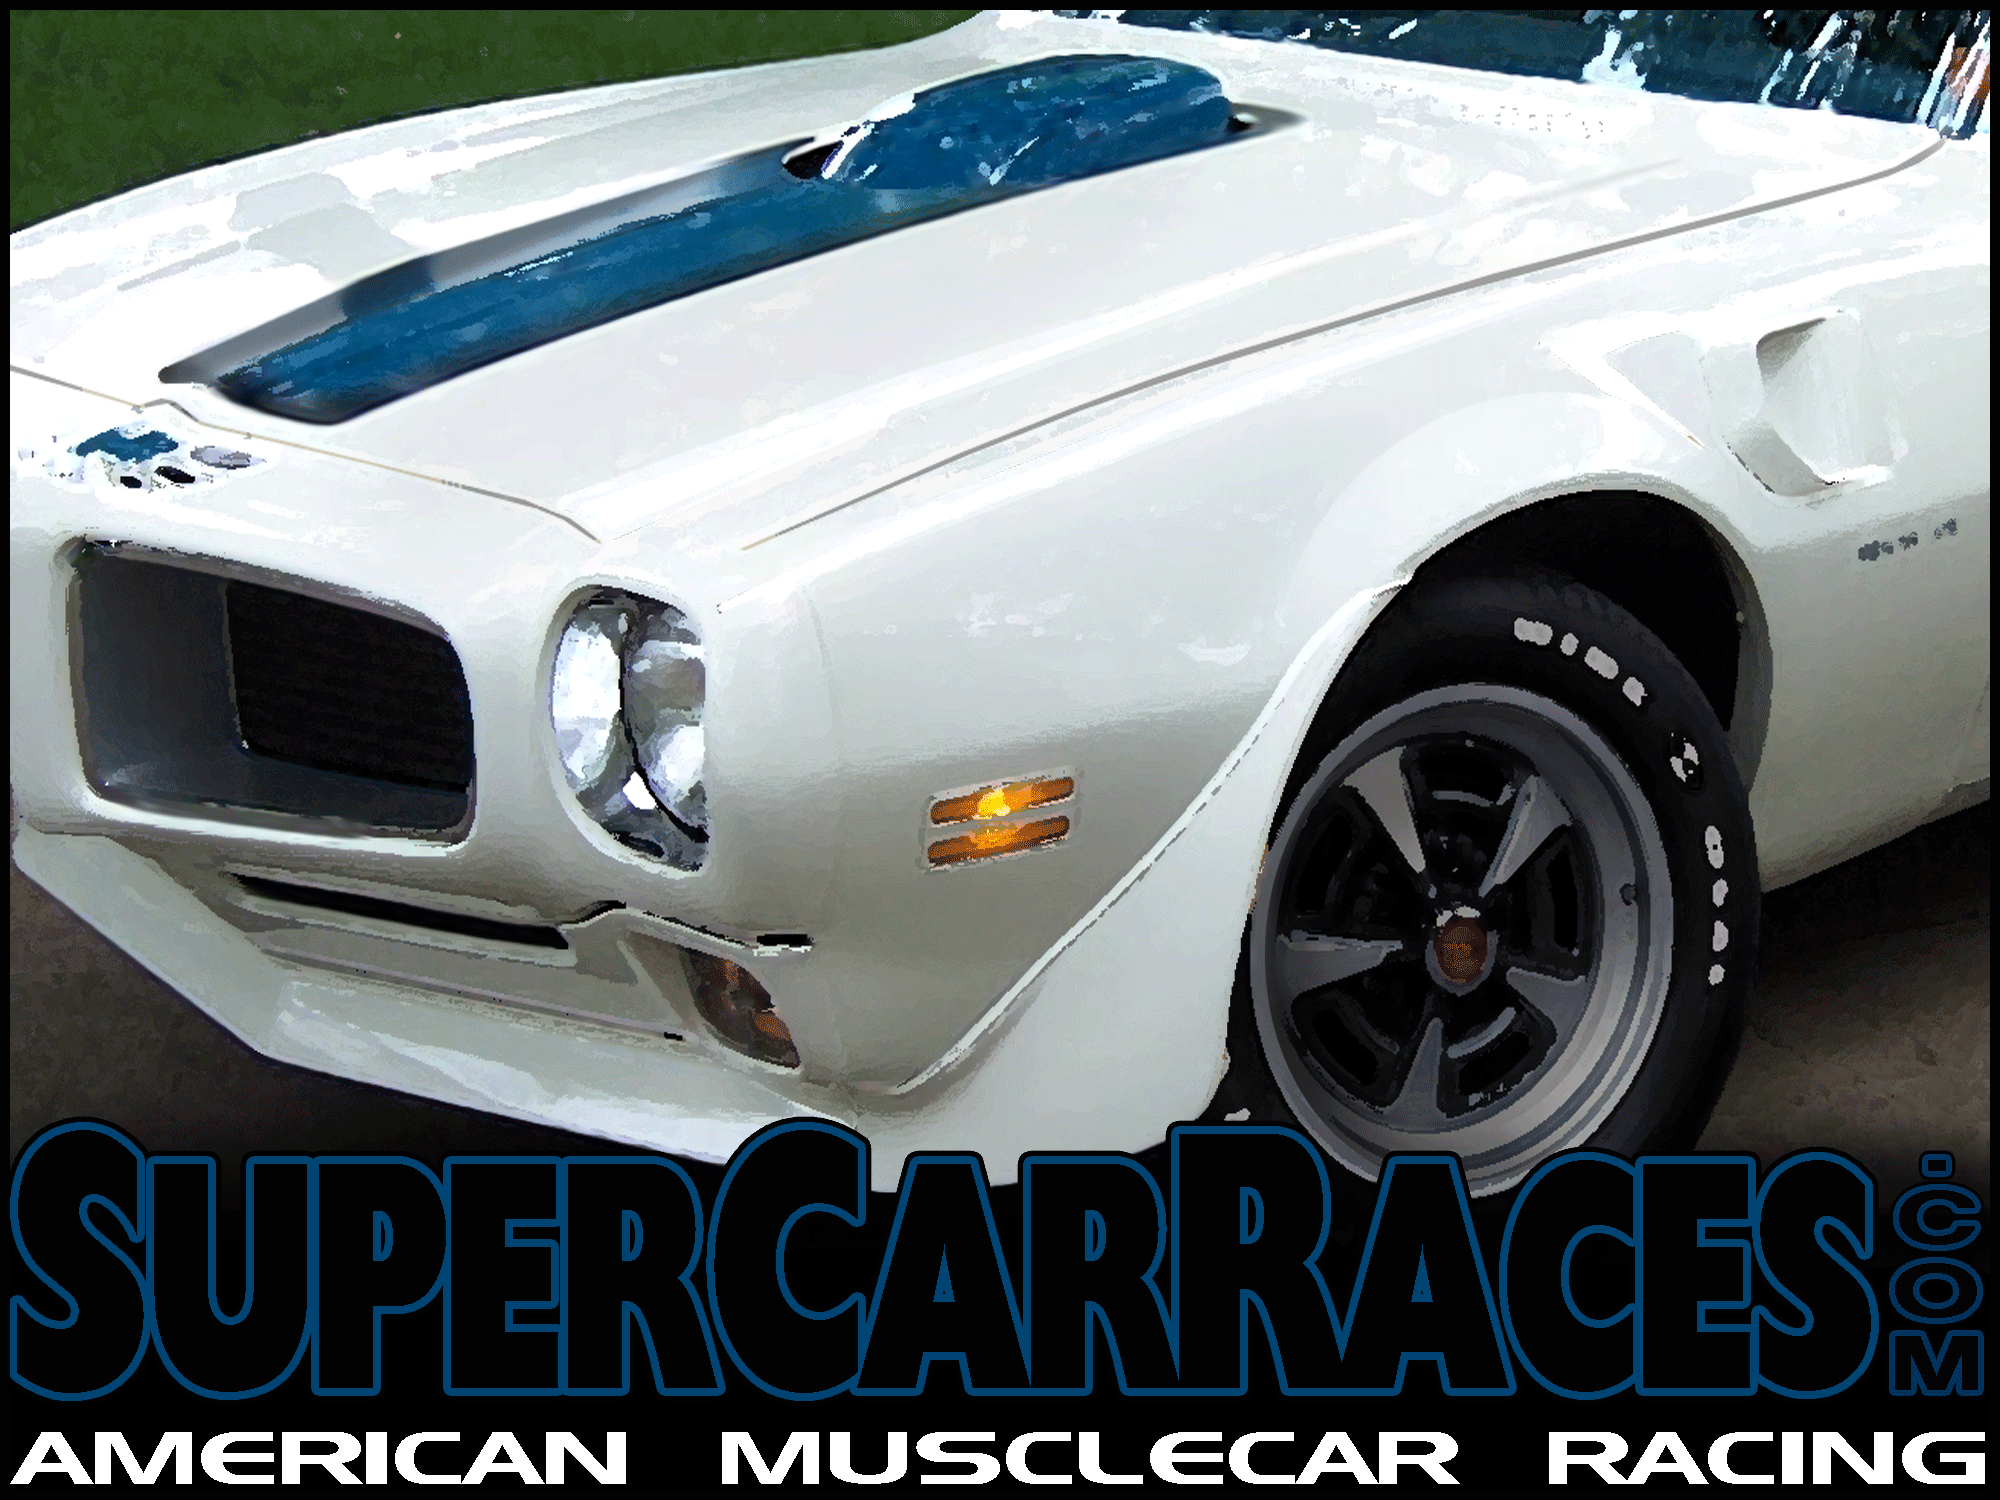 SuperCar Races